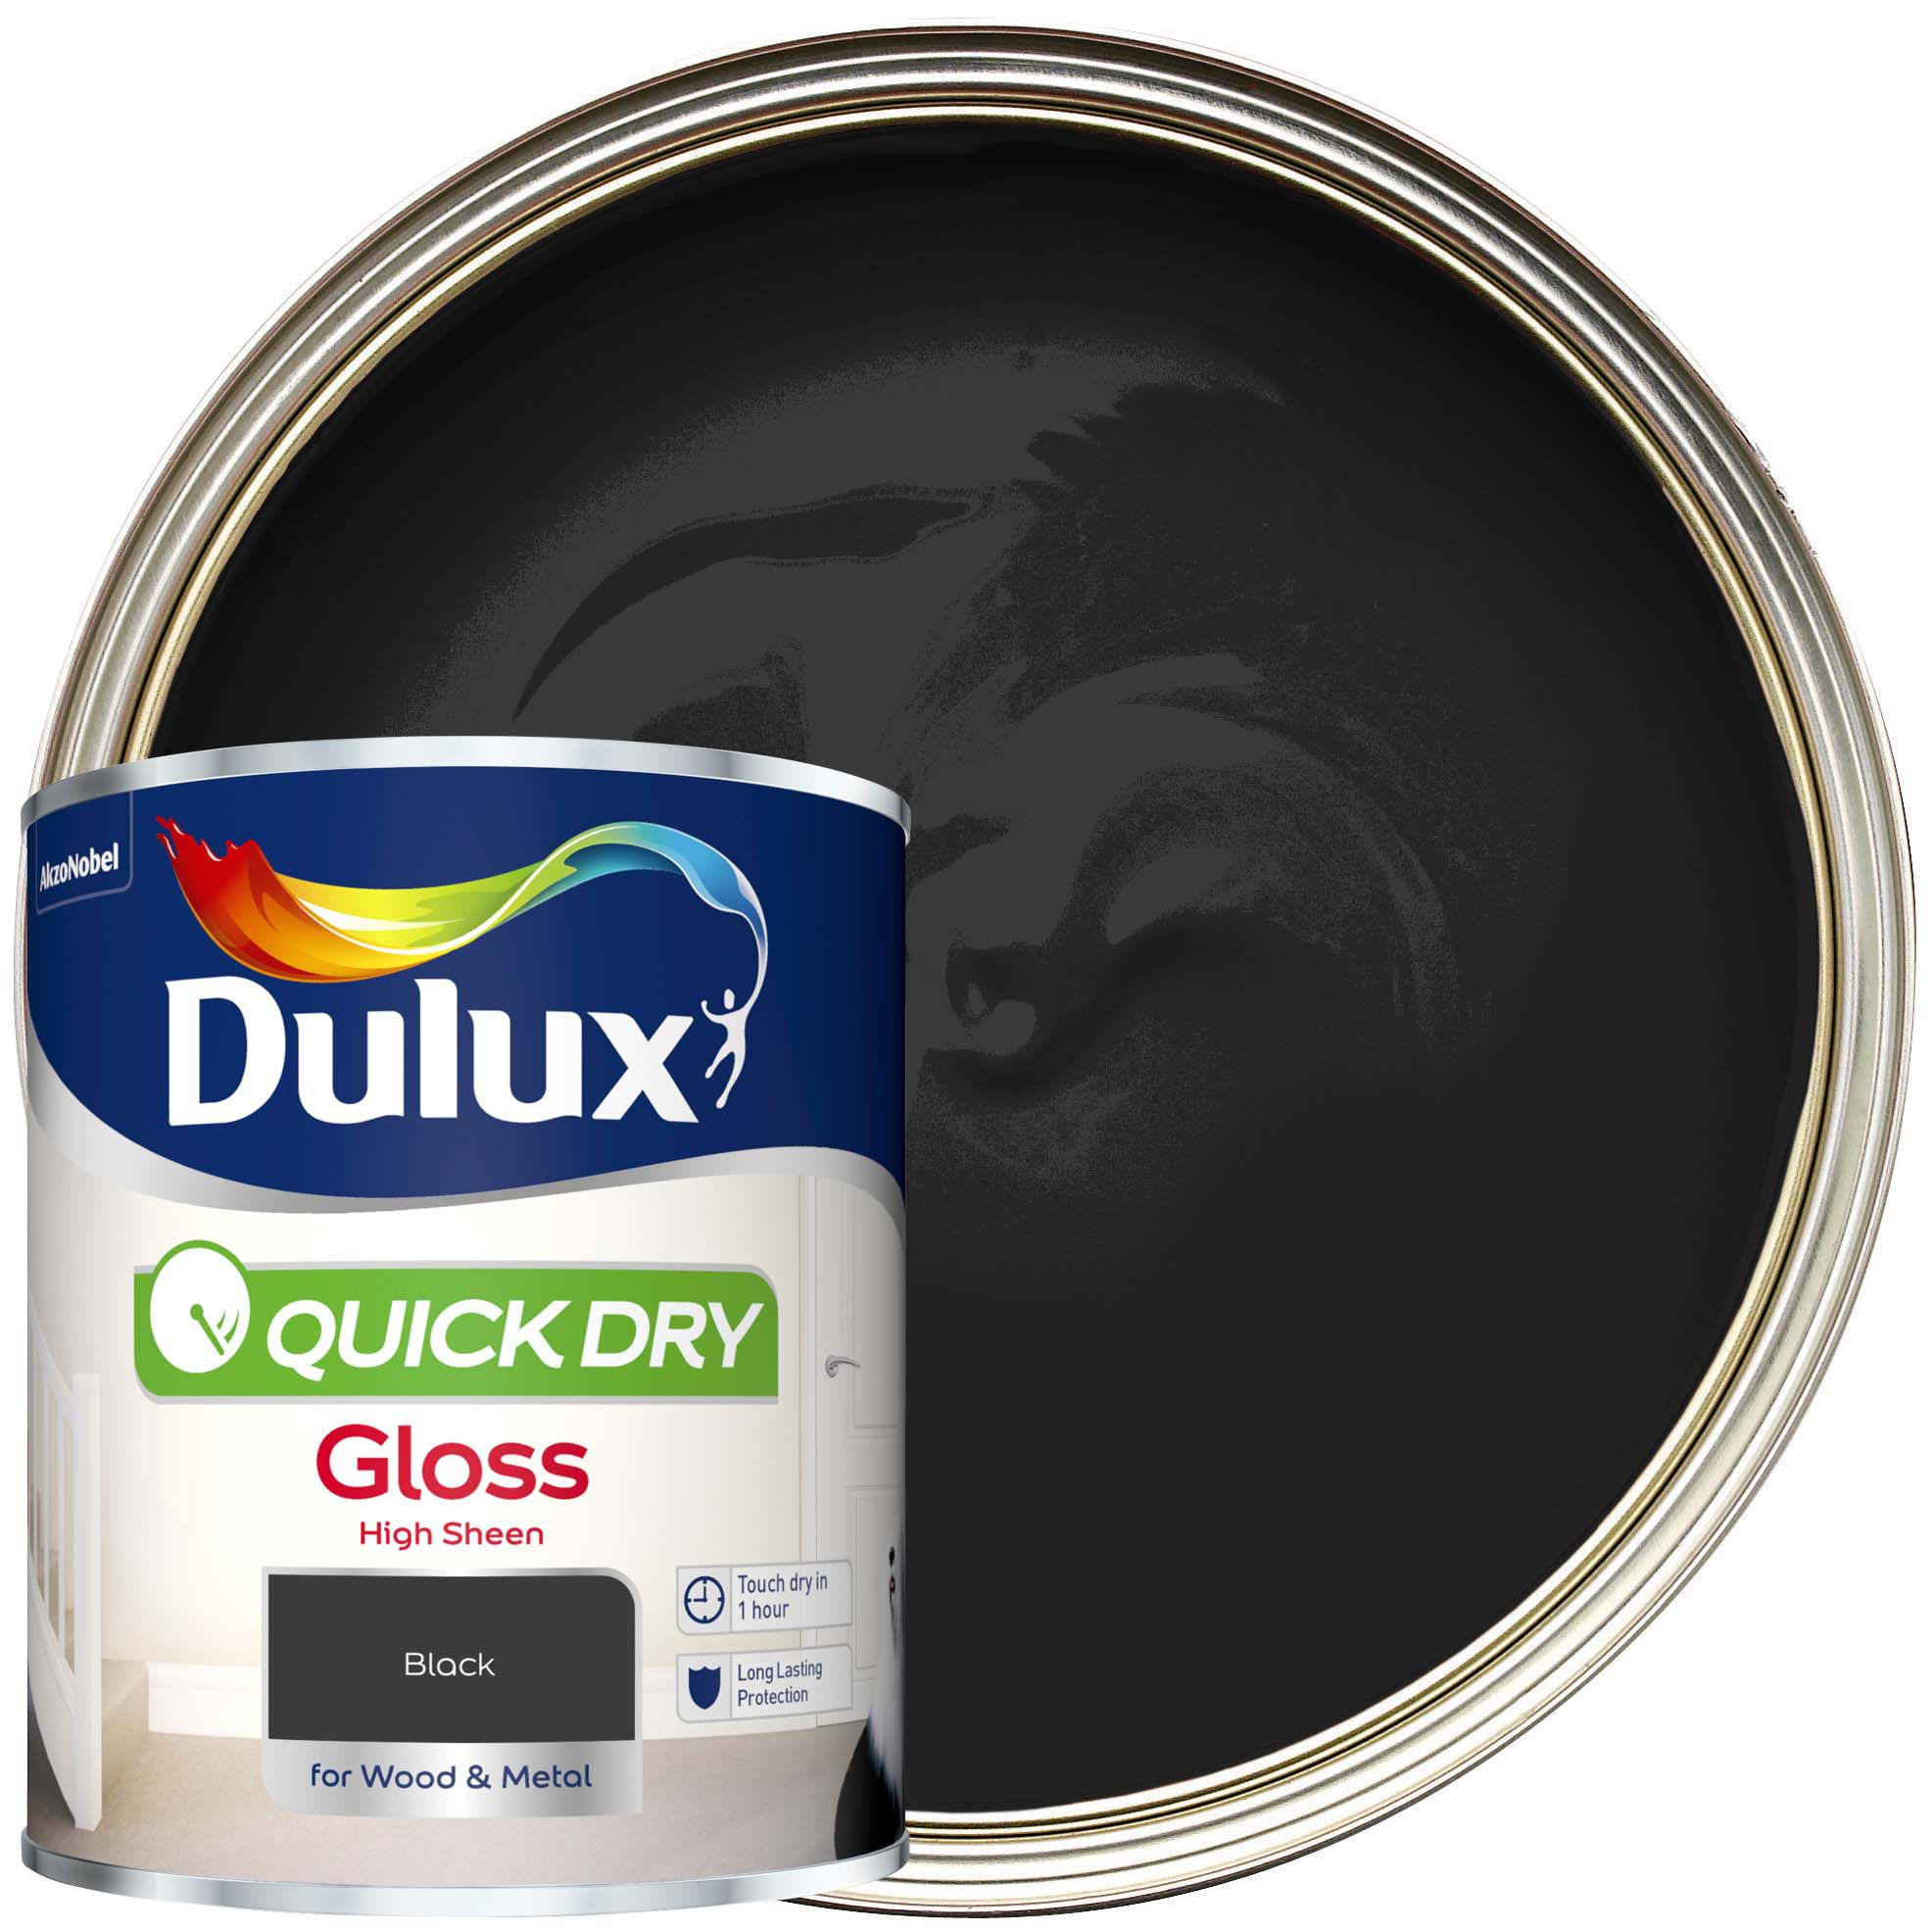 Dulux Quick Dry Gloss Paint - Black Paint